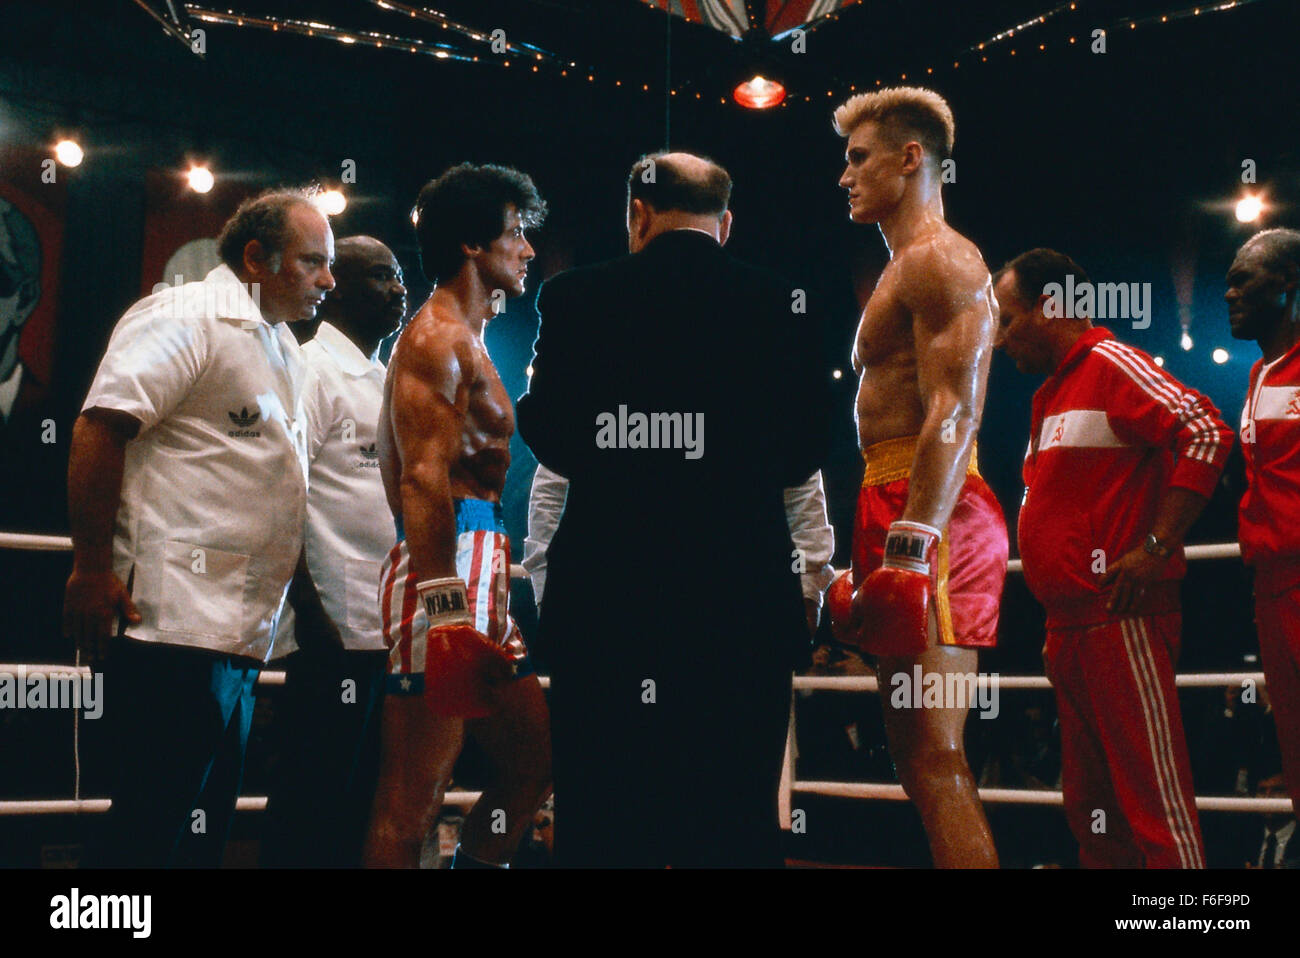 Nov 27, 1985; Las Vegas, NV, USA; Actors SYLVESTER STALLONE as Rocky Balboa and DOLPH LUNDGREN as Ivan Drago in 'Rocky 4'. Directed by Sylvester Stallone. Stock Photo